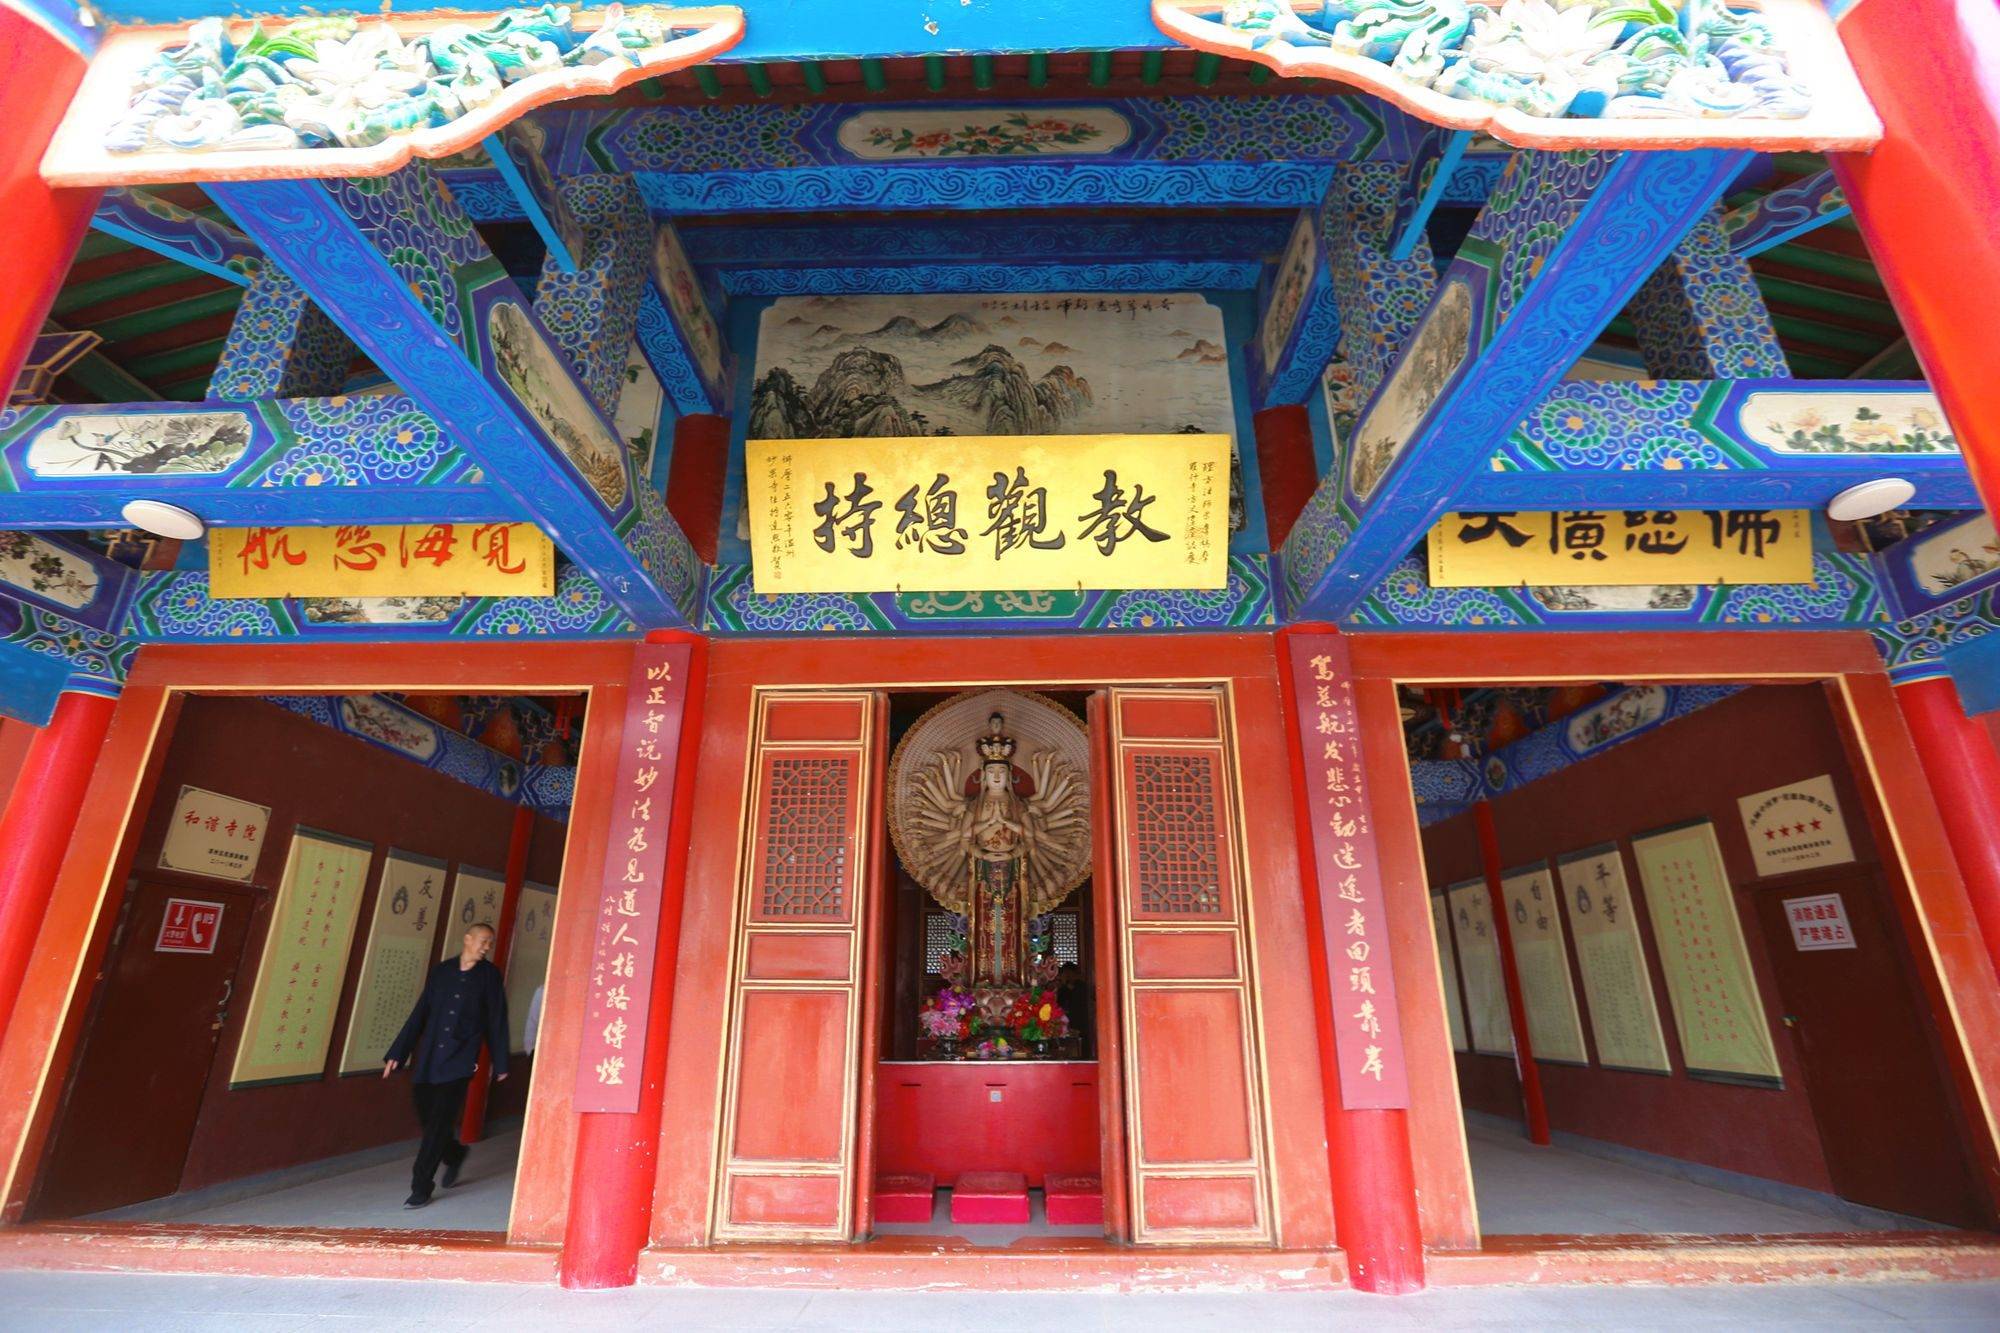 甘肃武威有一座鸠摩罗什寺,雄踞西北已逾千年,充满了传奇色彩